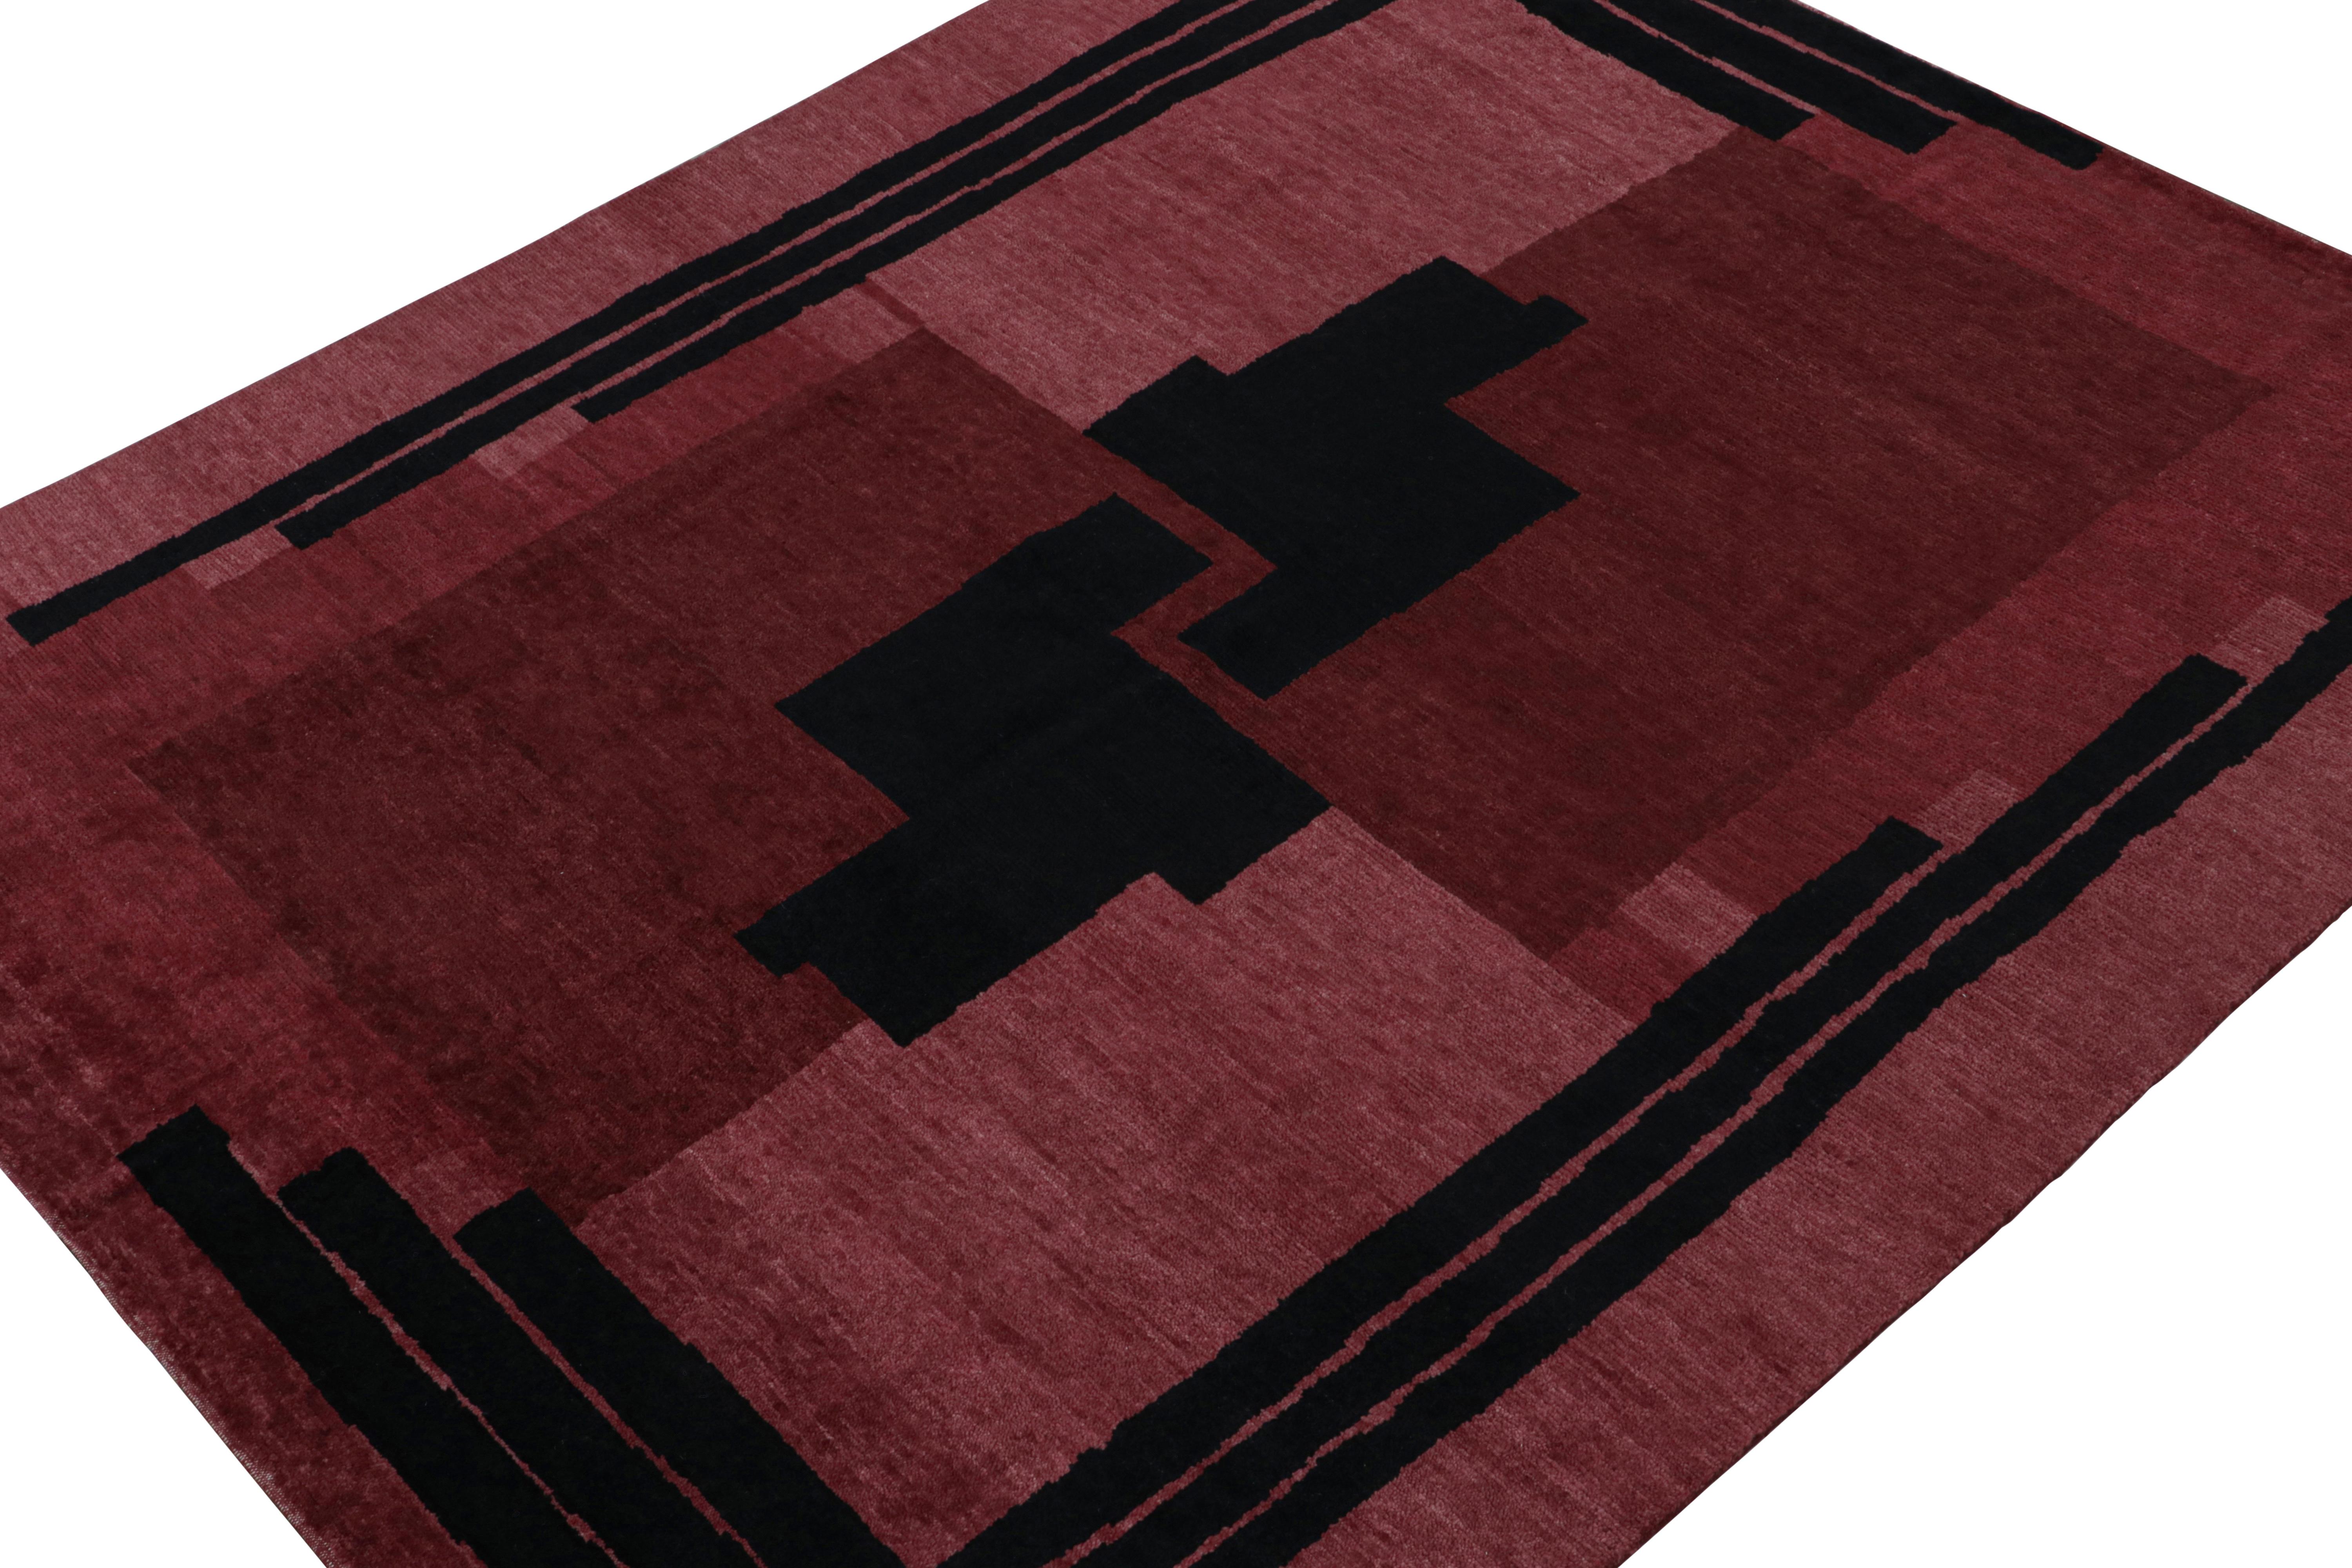 Noué à la main en laine, ce tapis moderne 8x10 est un nouvel ajout à la collection de tapis Art déco français de Rug & Kilim.

Sur le design

Cette pièce s'inspire du même style européen des années 1920 et présente des tons bordeaux et rouge